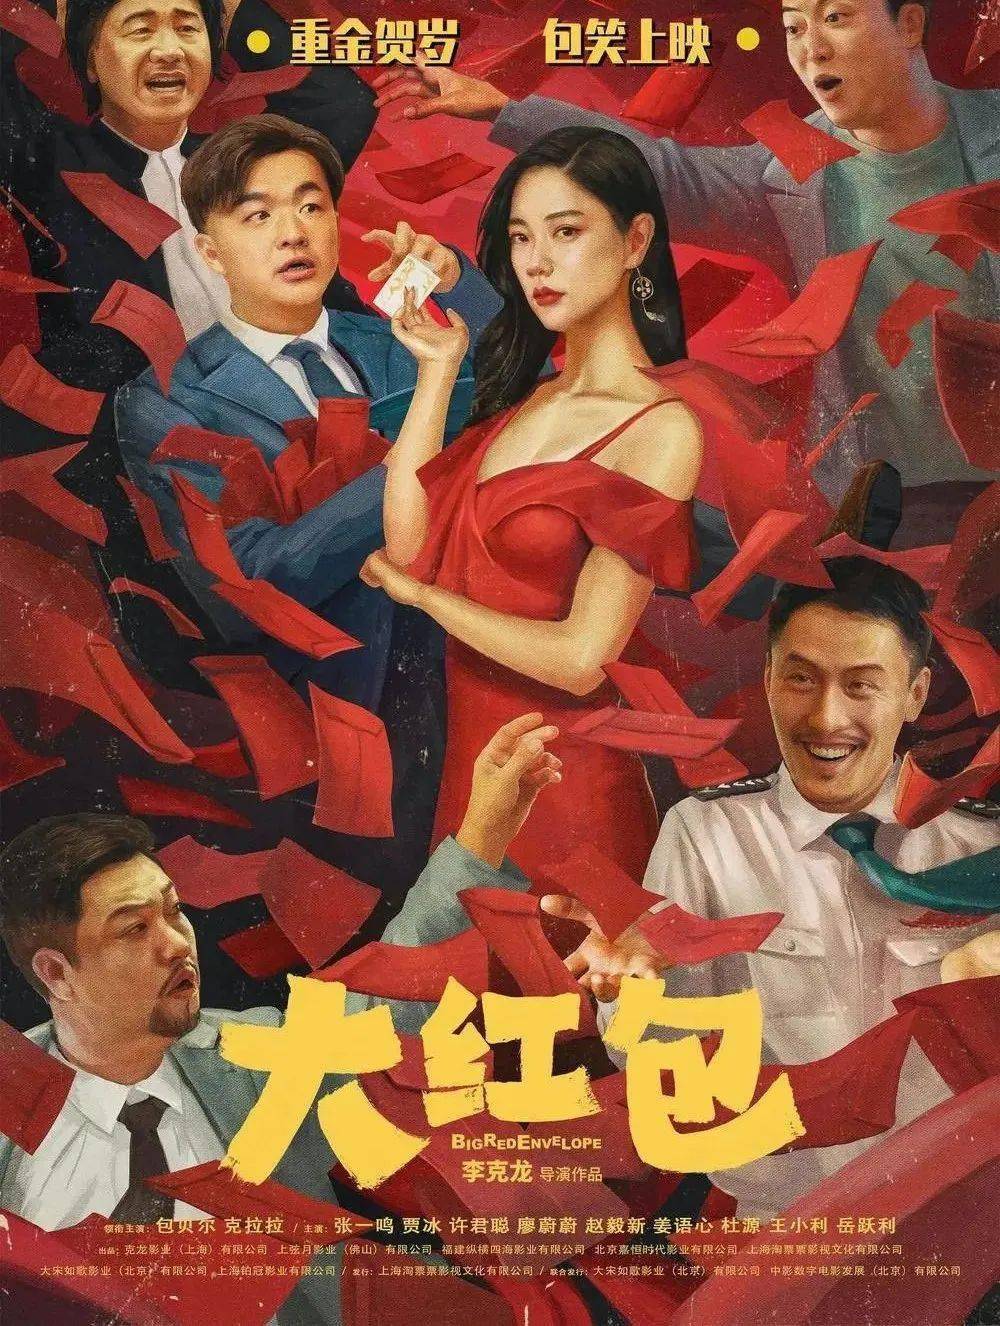 王小利,岳跃利主演的爆笑喜剧《大红包》发布喜笑颜开版人物海报,7